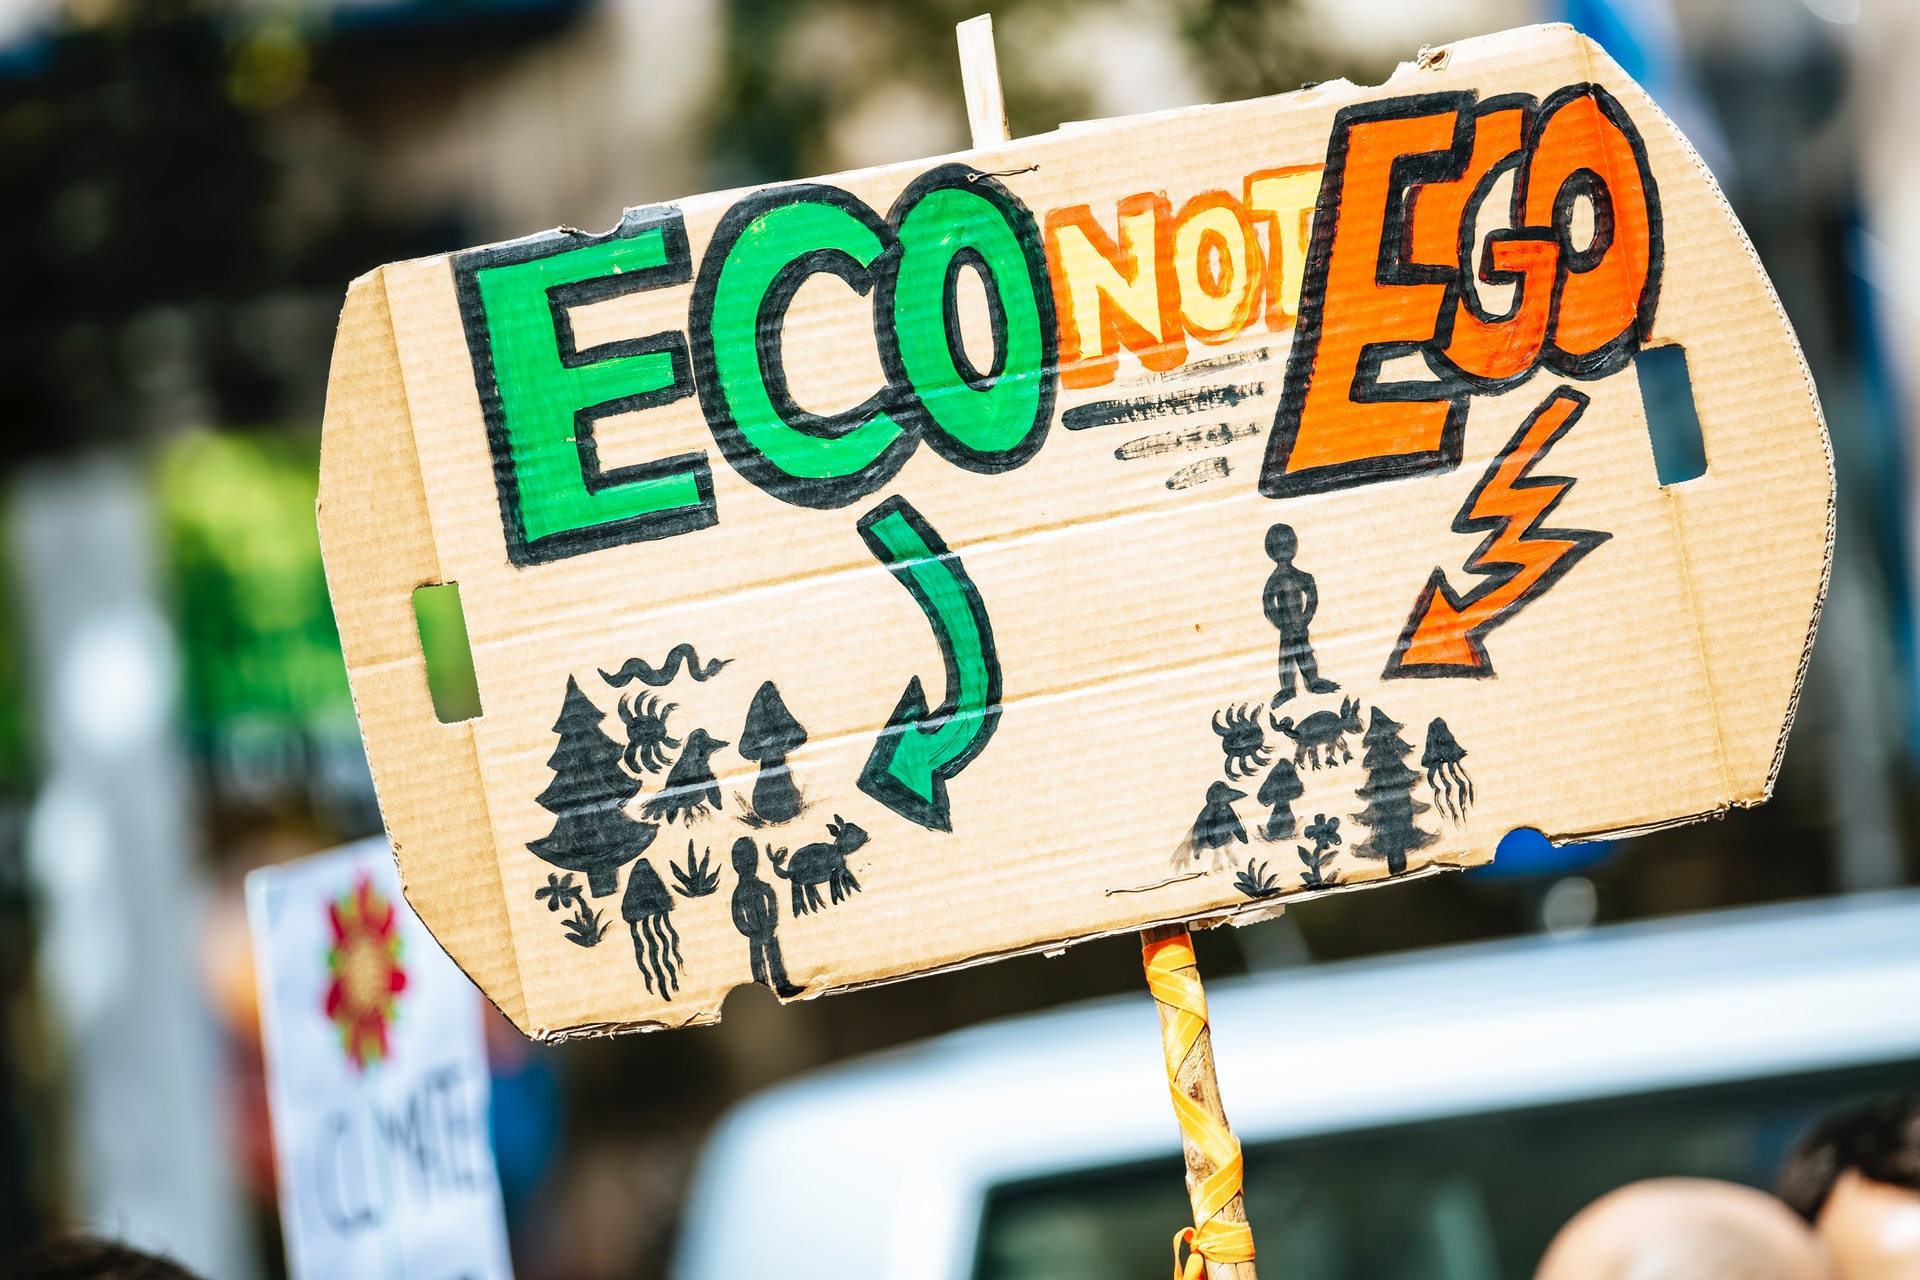 Demo-Plakat mit der Aufschrift "Eco, not ego"